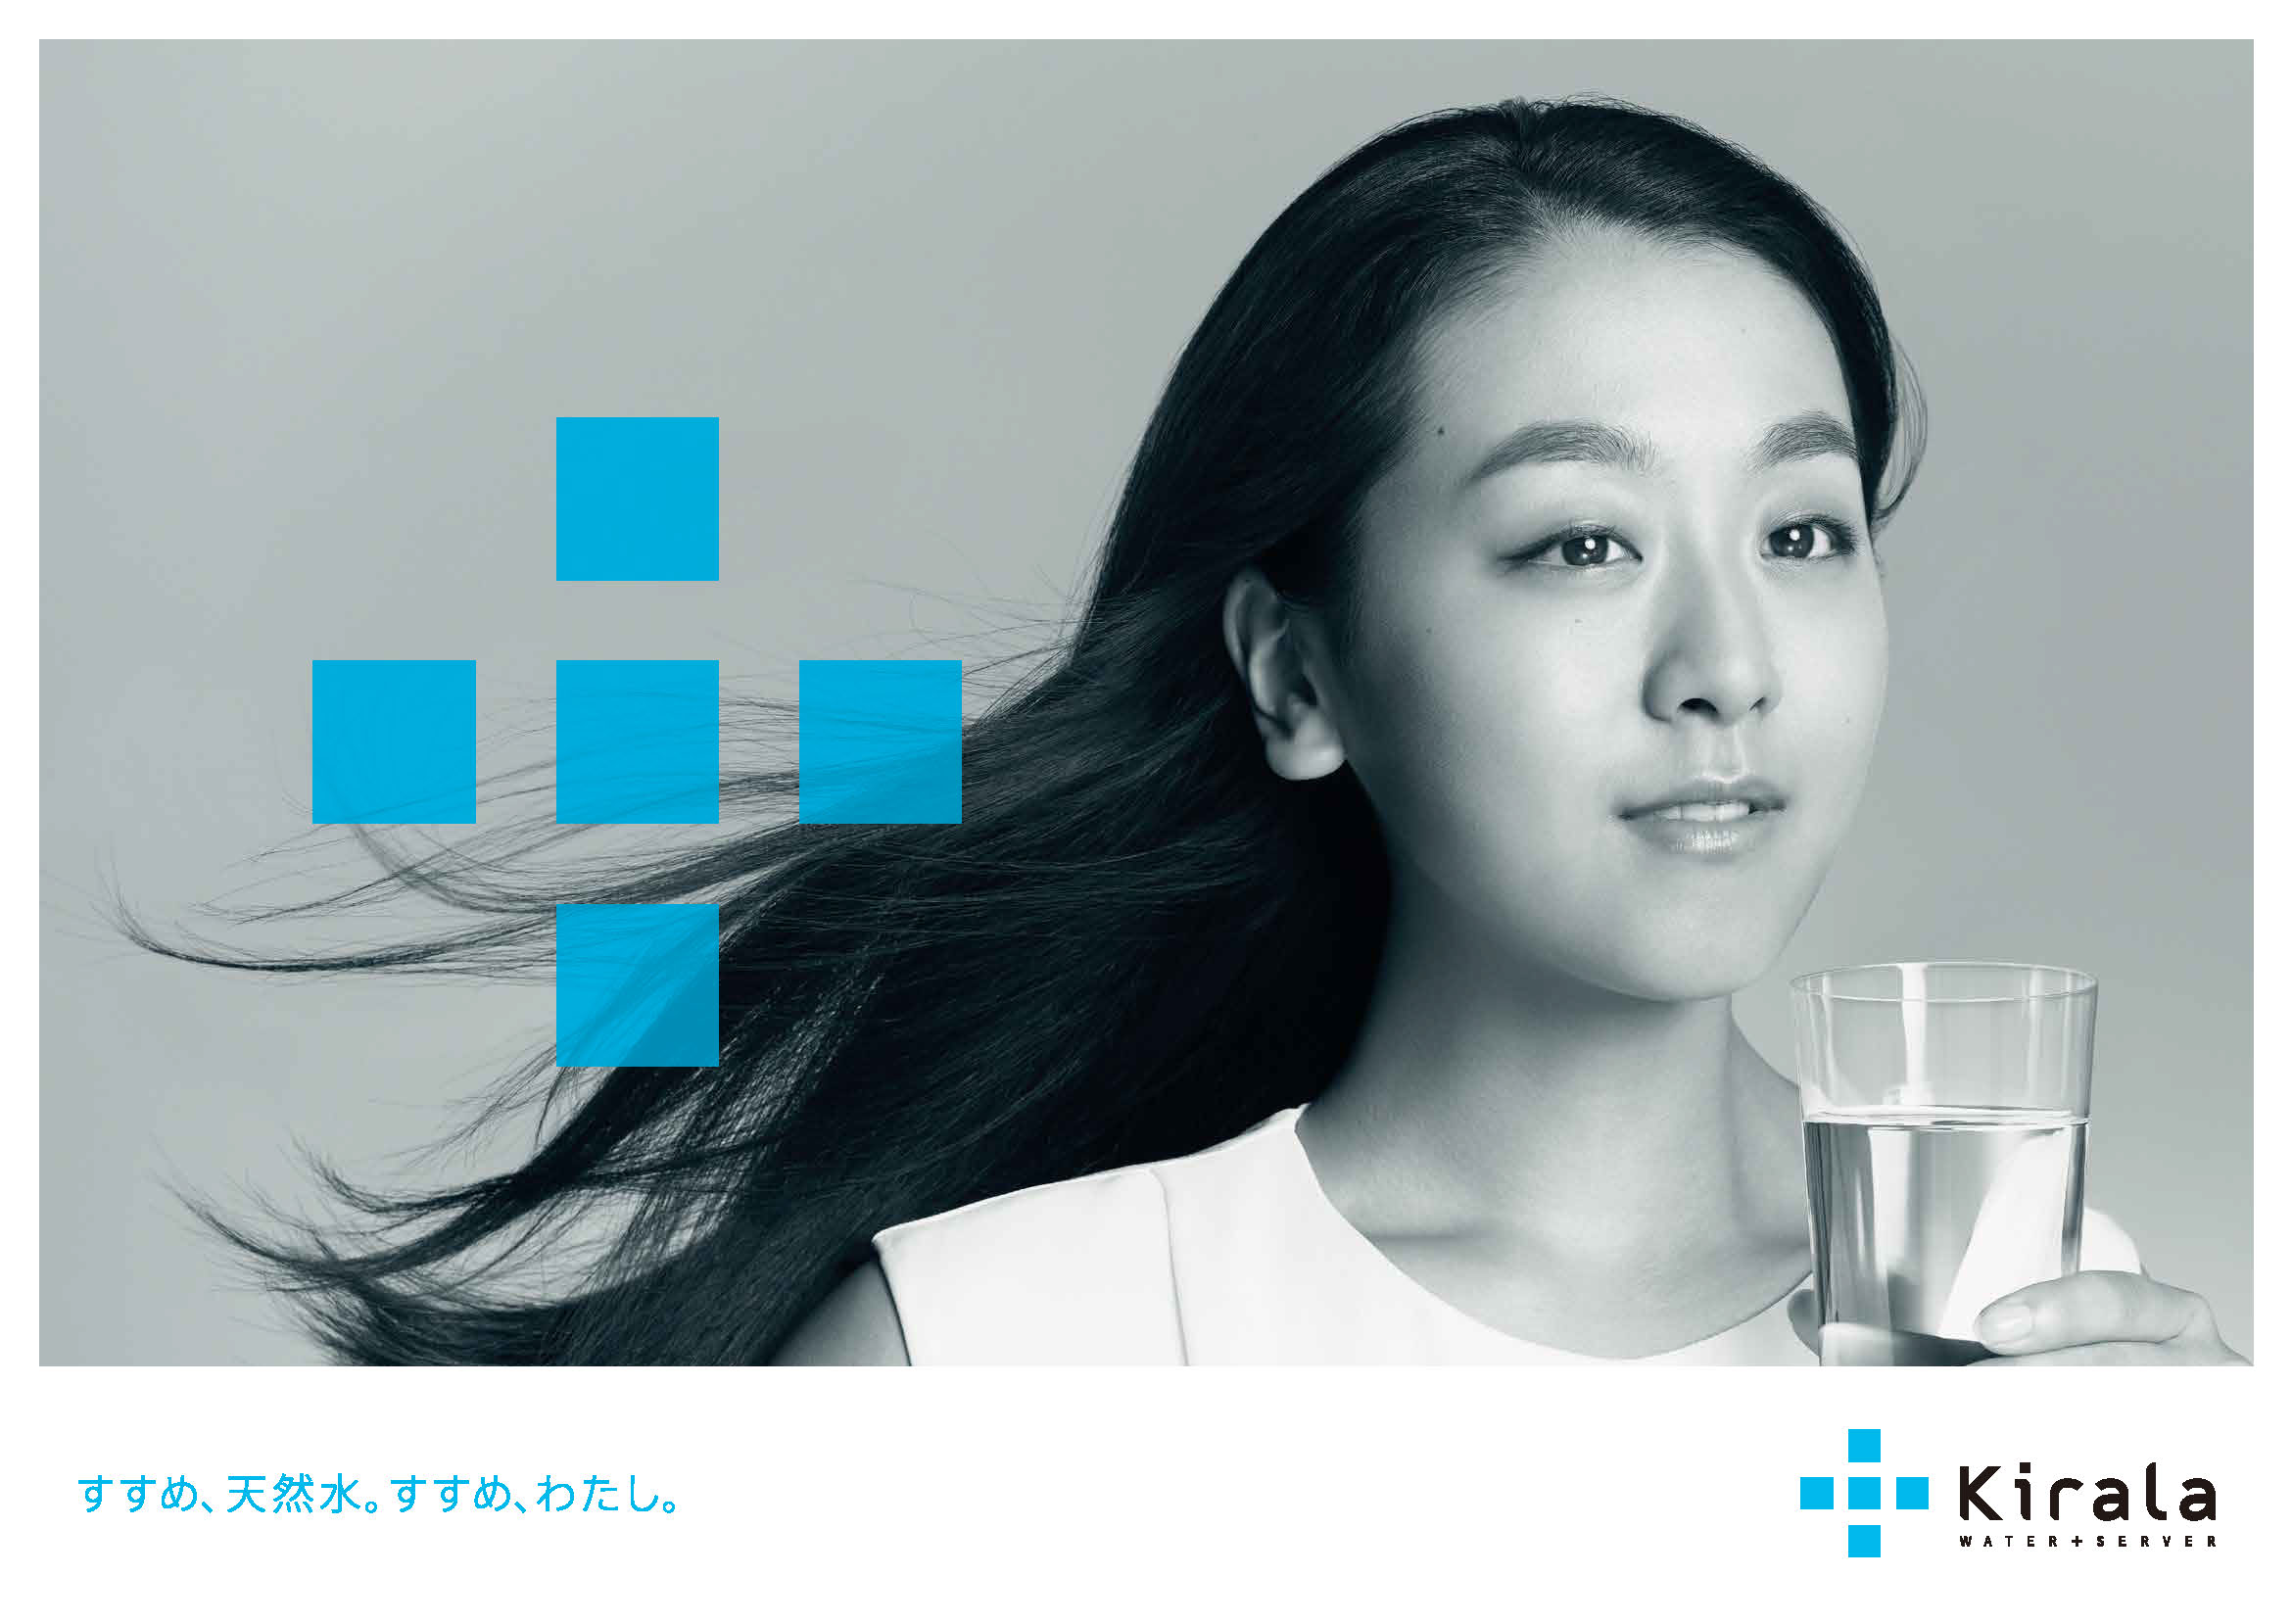 浅田真央さんがこだわりで選んだ ひとつ上の新ウォーターサーバーブランド Kirala サービス開始 株式会社mtgのプレスリリース